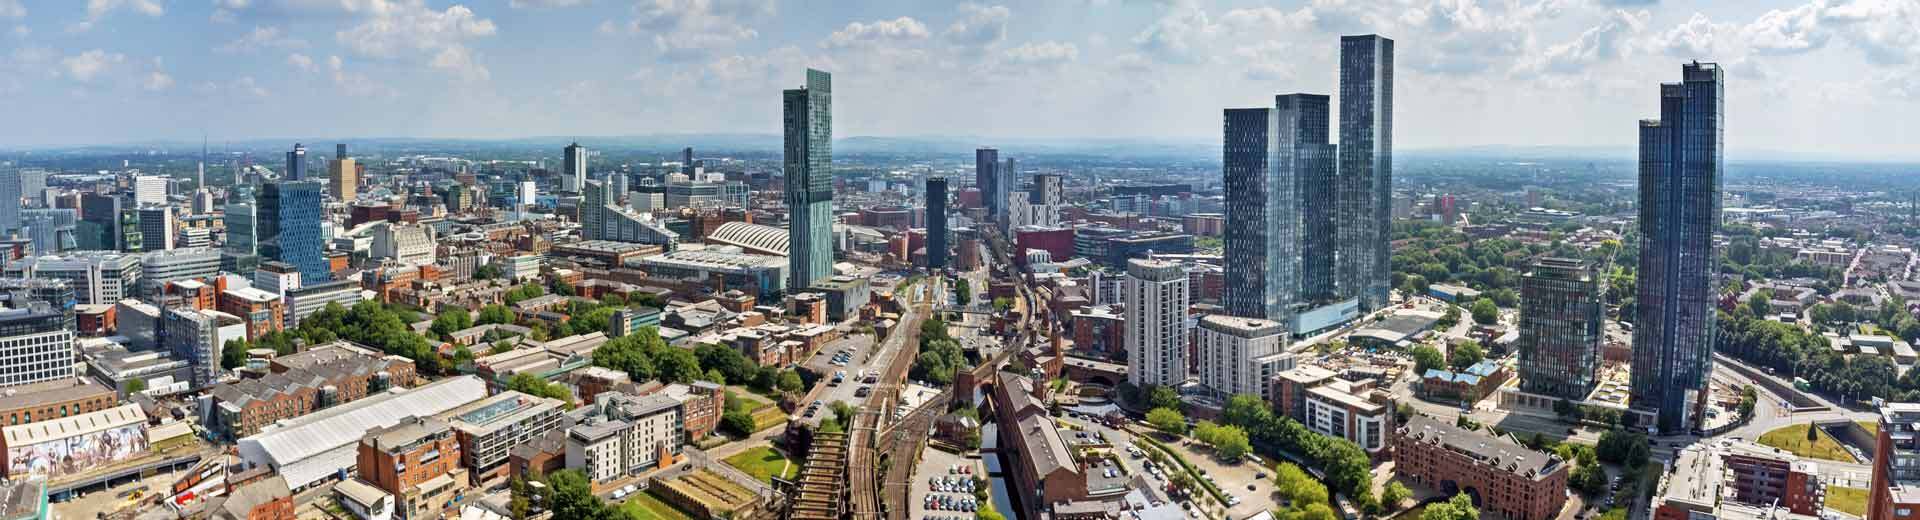 Vista aérea de Manchester, con rascacielos que se elevan sobre edificios victorianos de ladrillo rojo.